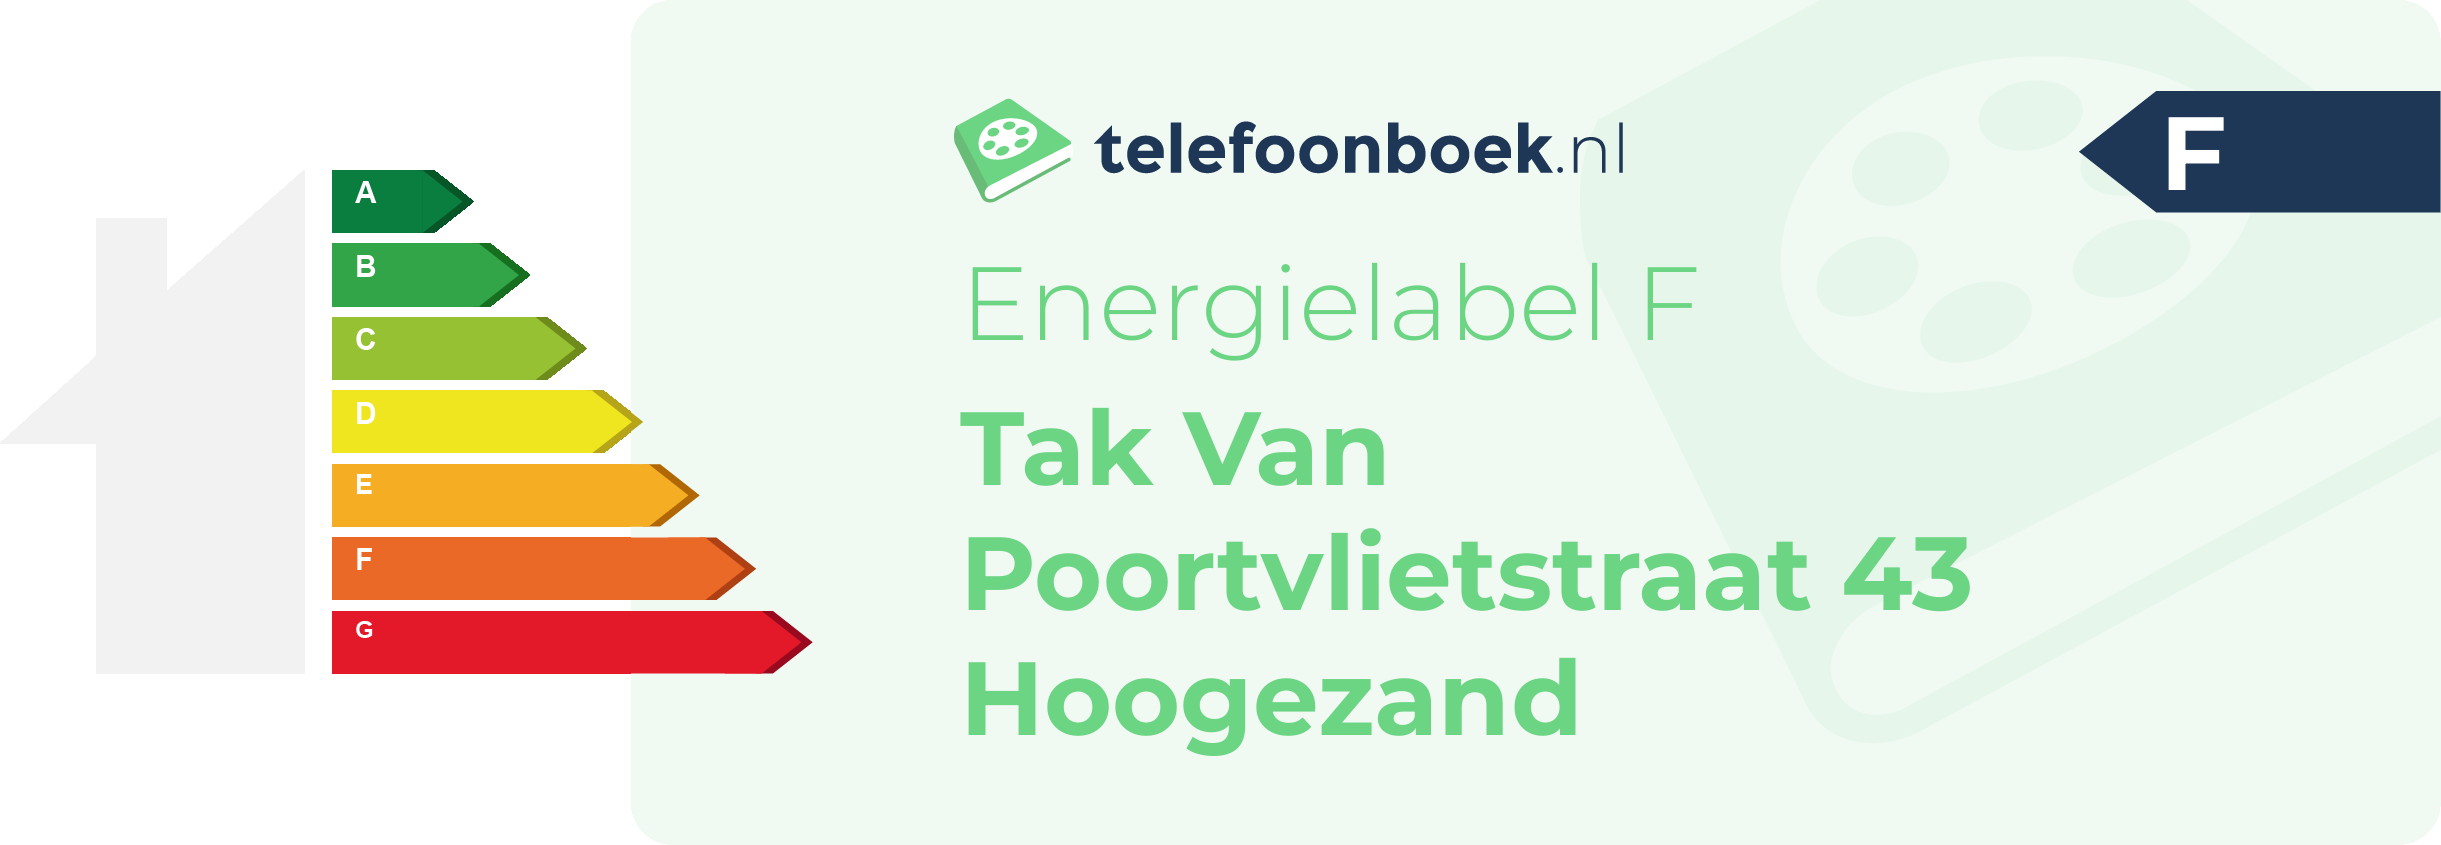 Energielabel Tak Van Poortvlietstraat 43 Hoogezand